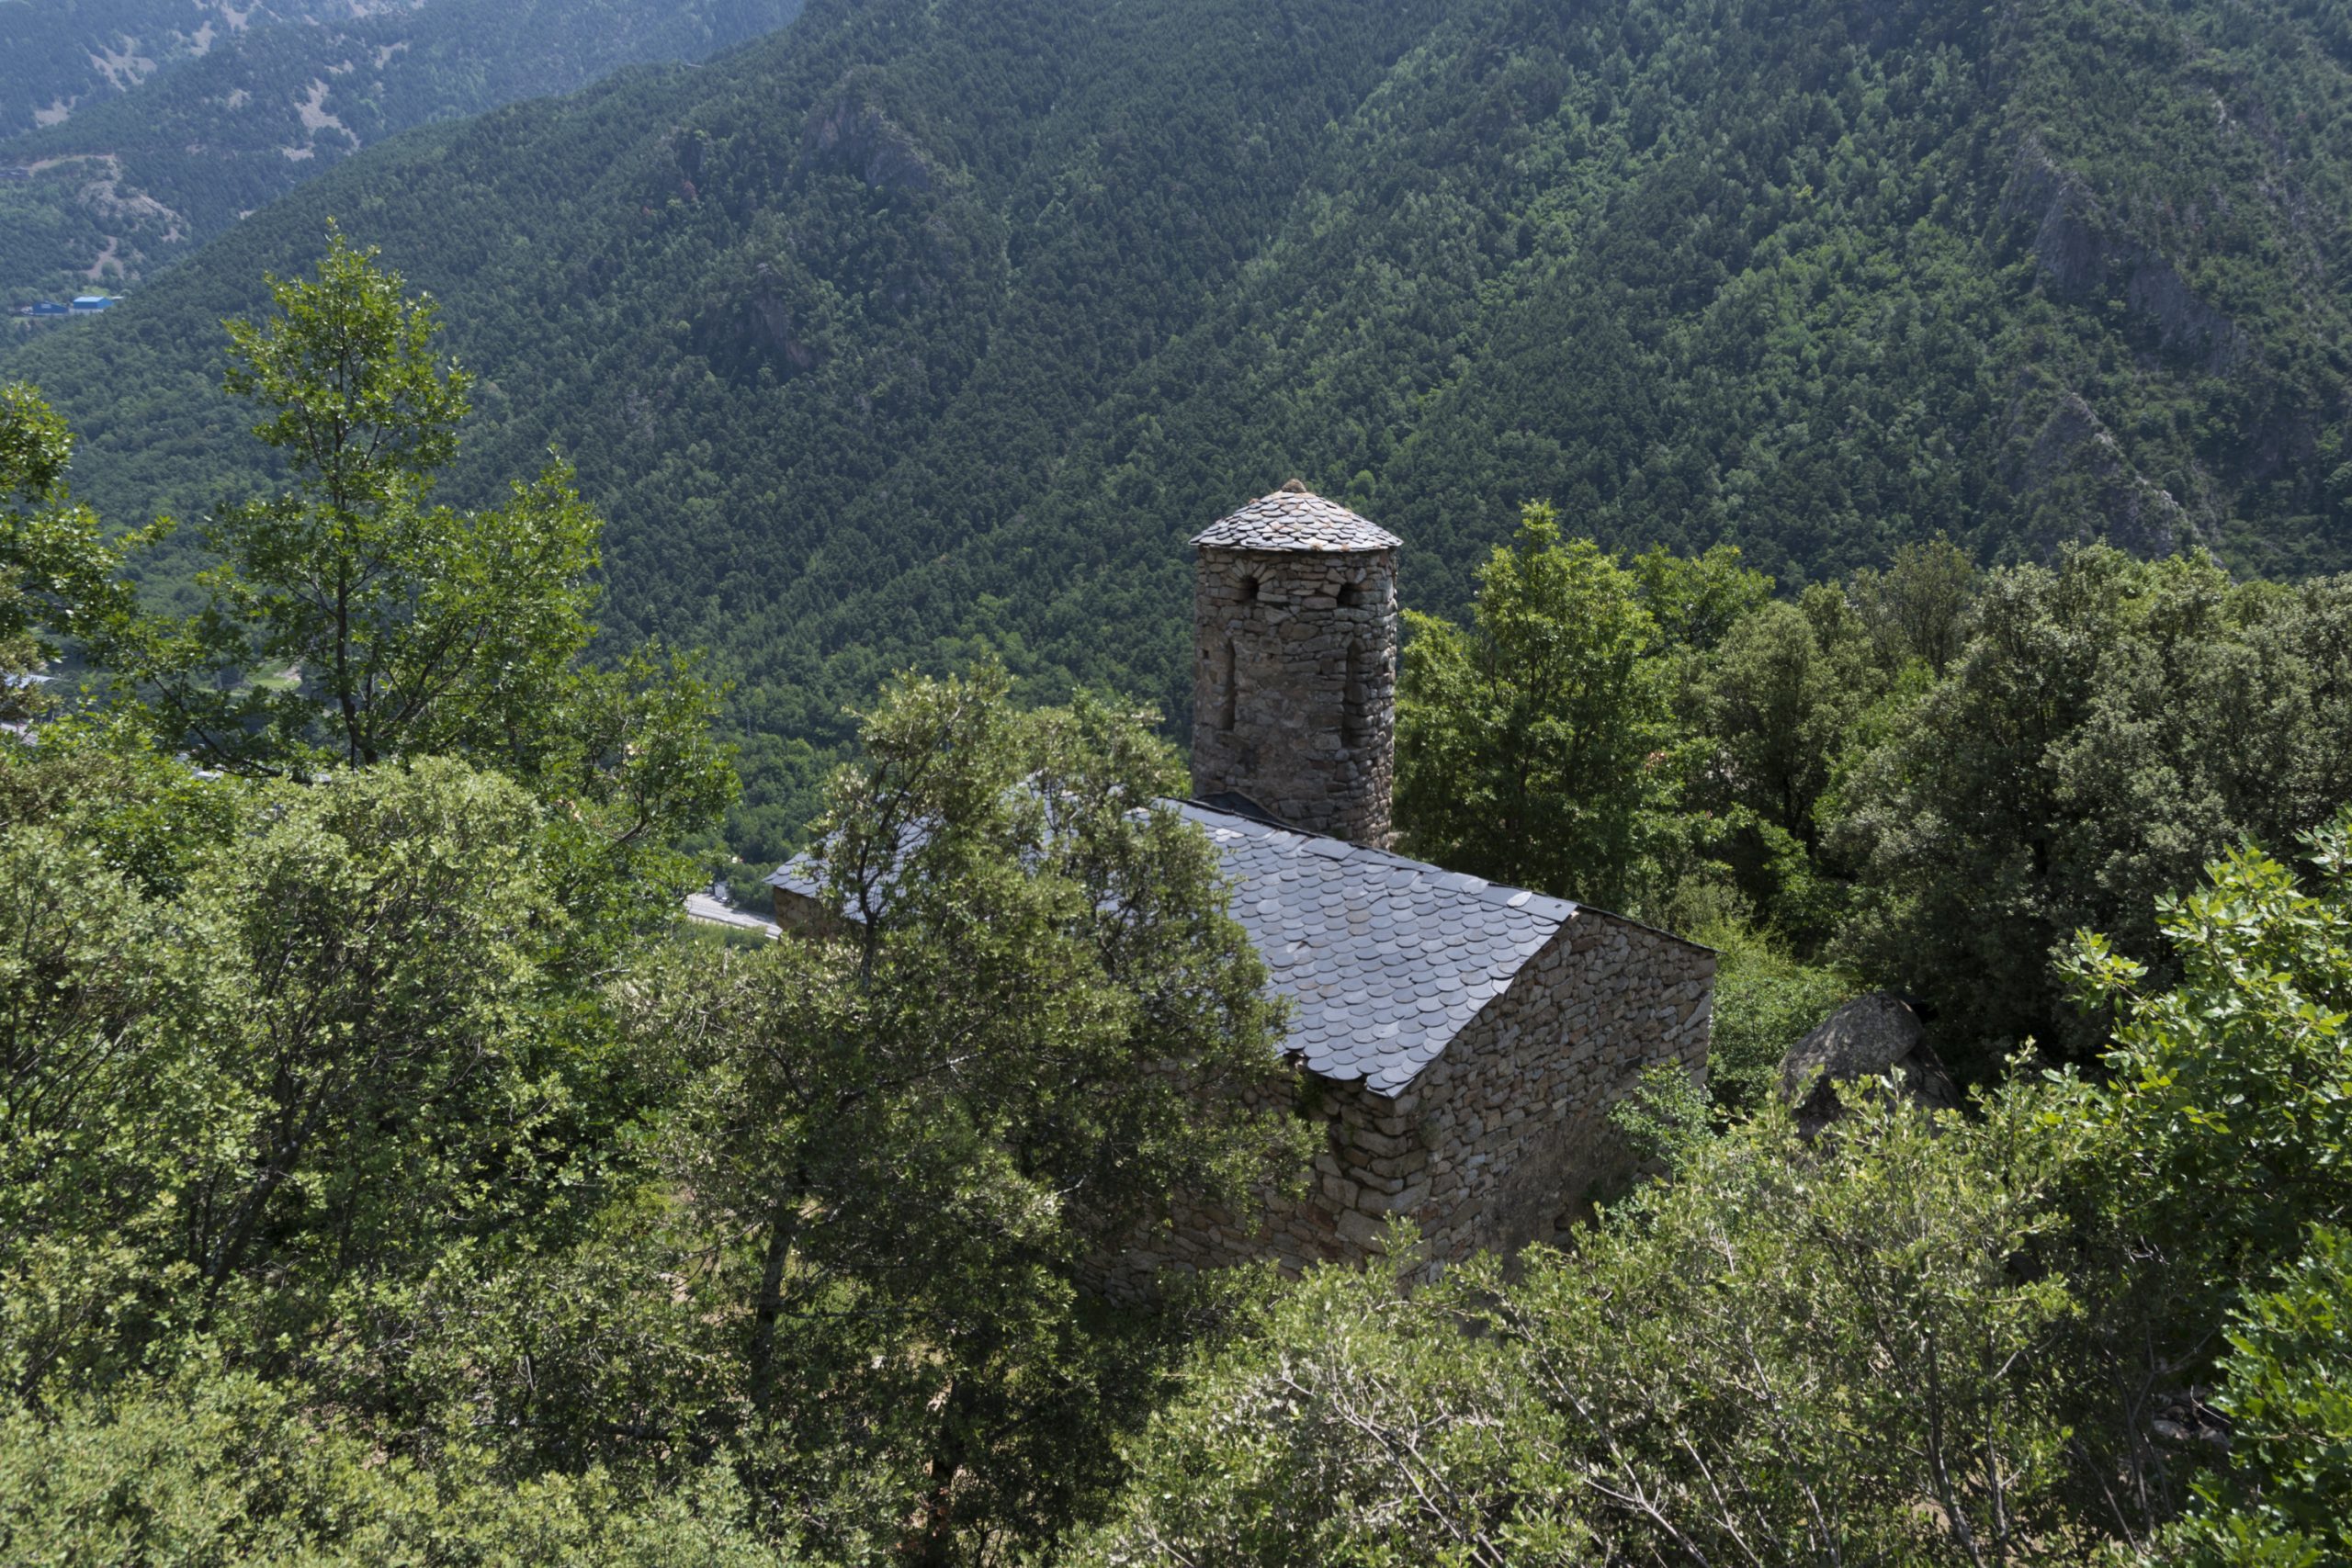 Church of Sant Vicenç d'Enclar